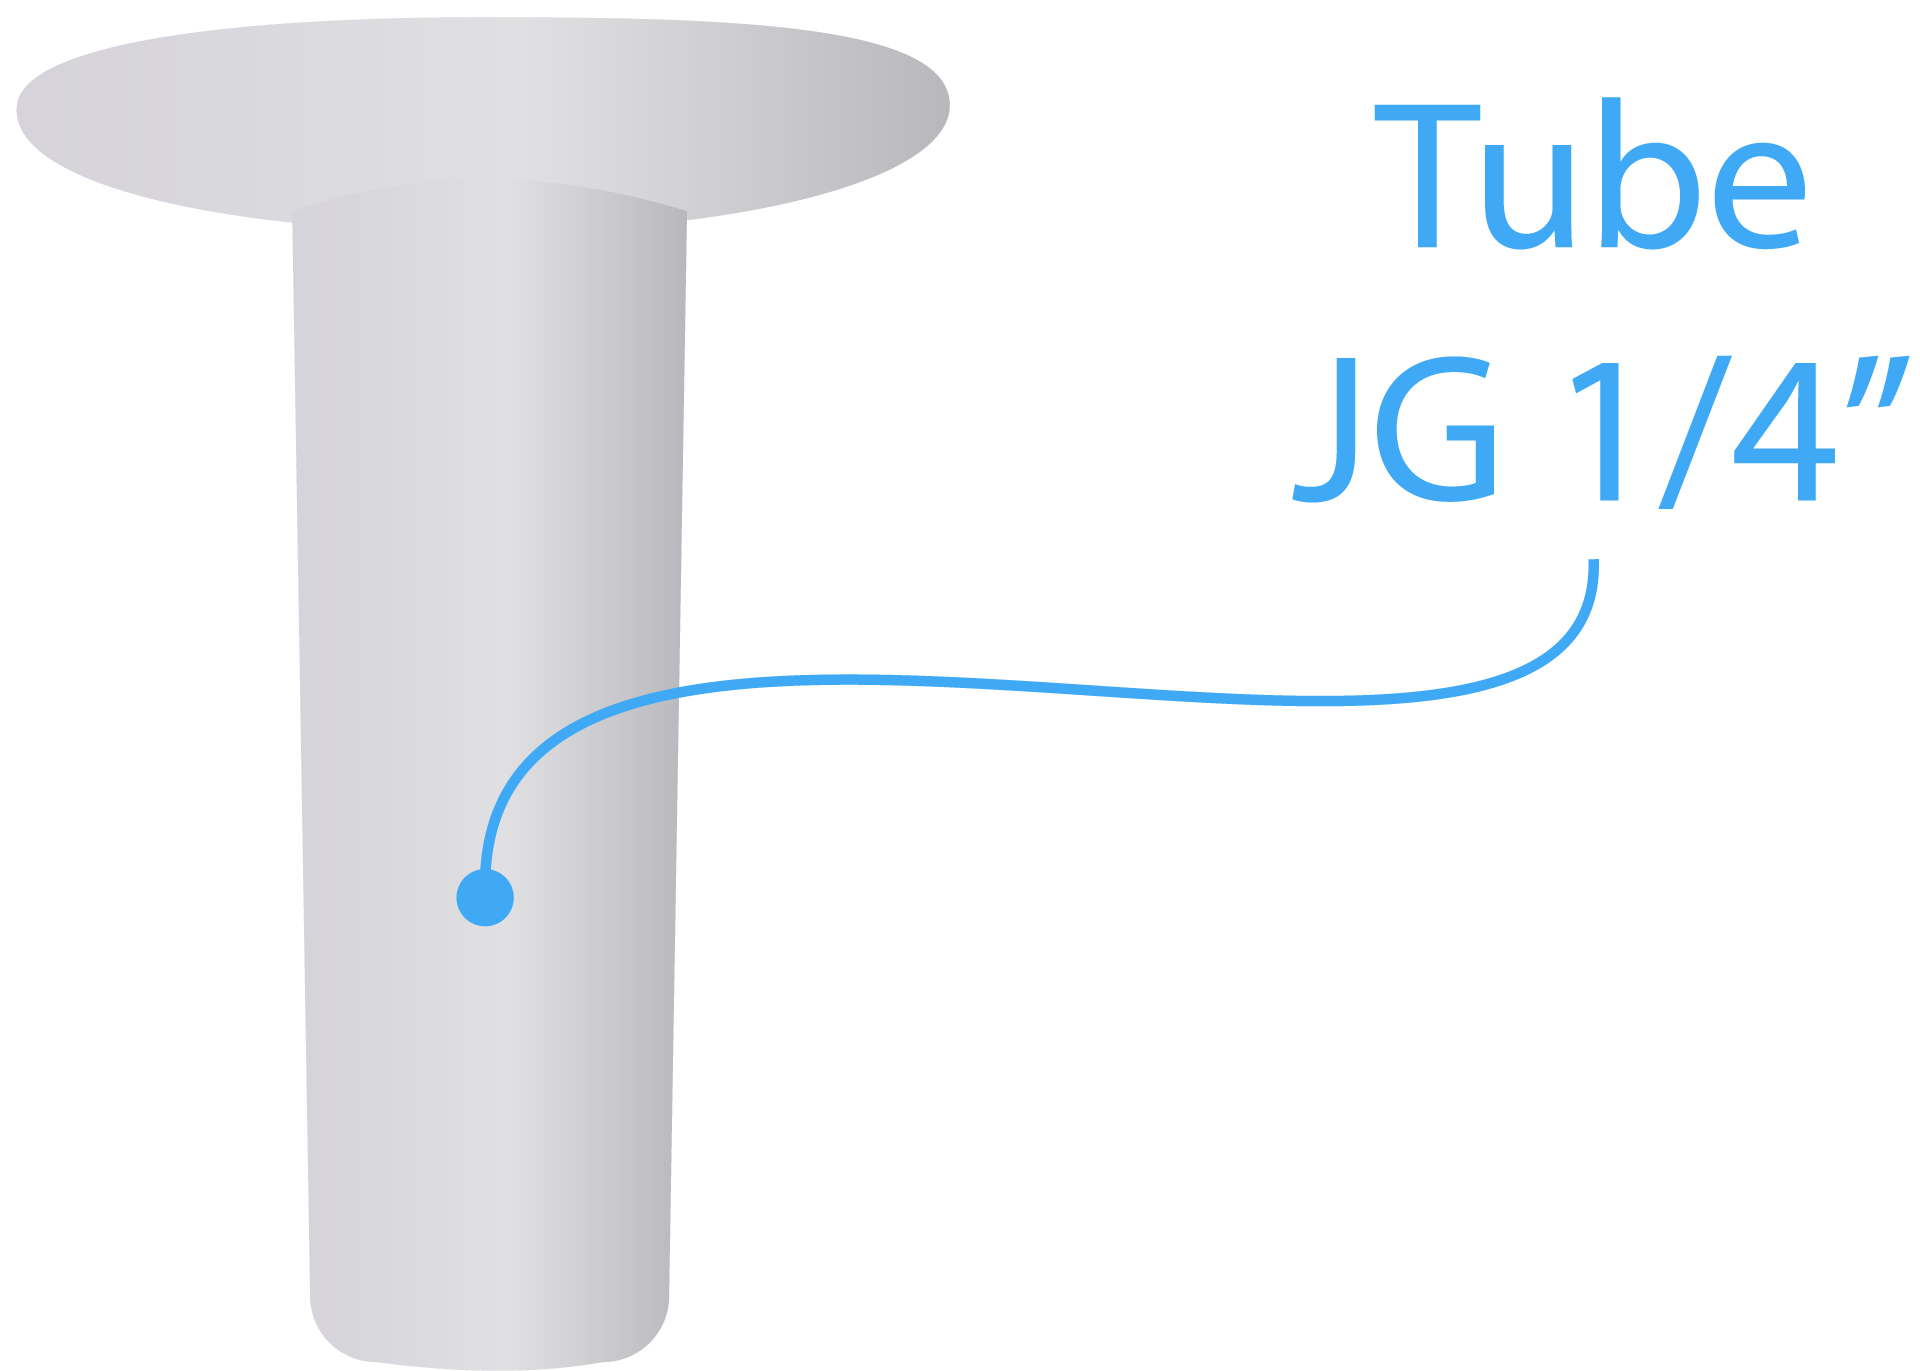 Connector Plug (Tube JG 1/4”) info 1